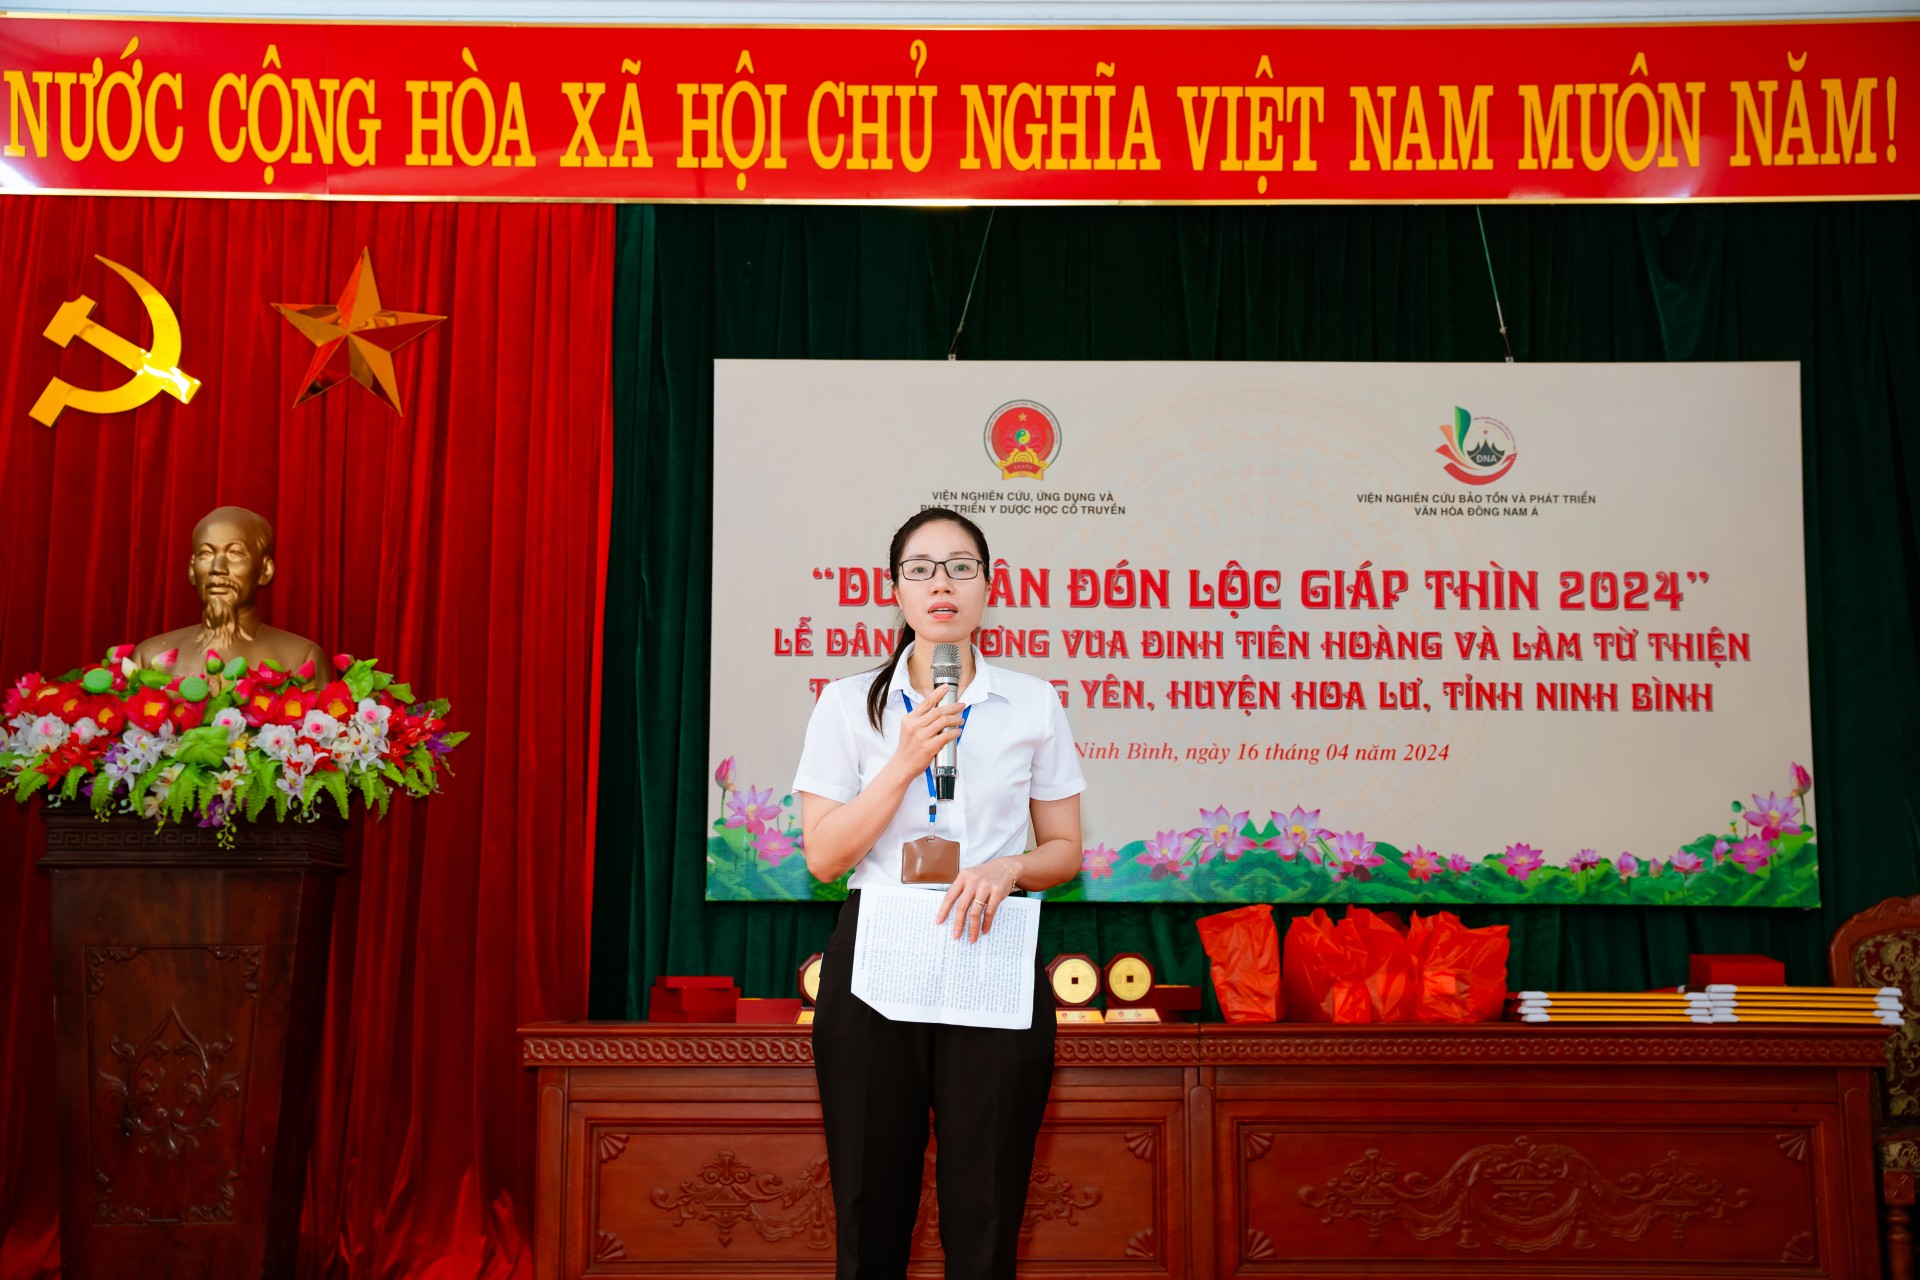 Trao quà từ thiện cho các gia đình chính sách, hộ nghèo, học sinh nghèo học giỏi tại Ninh Bình.